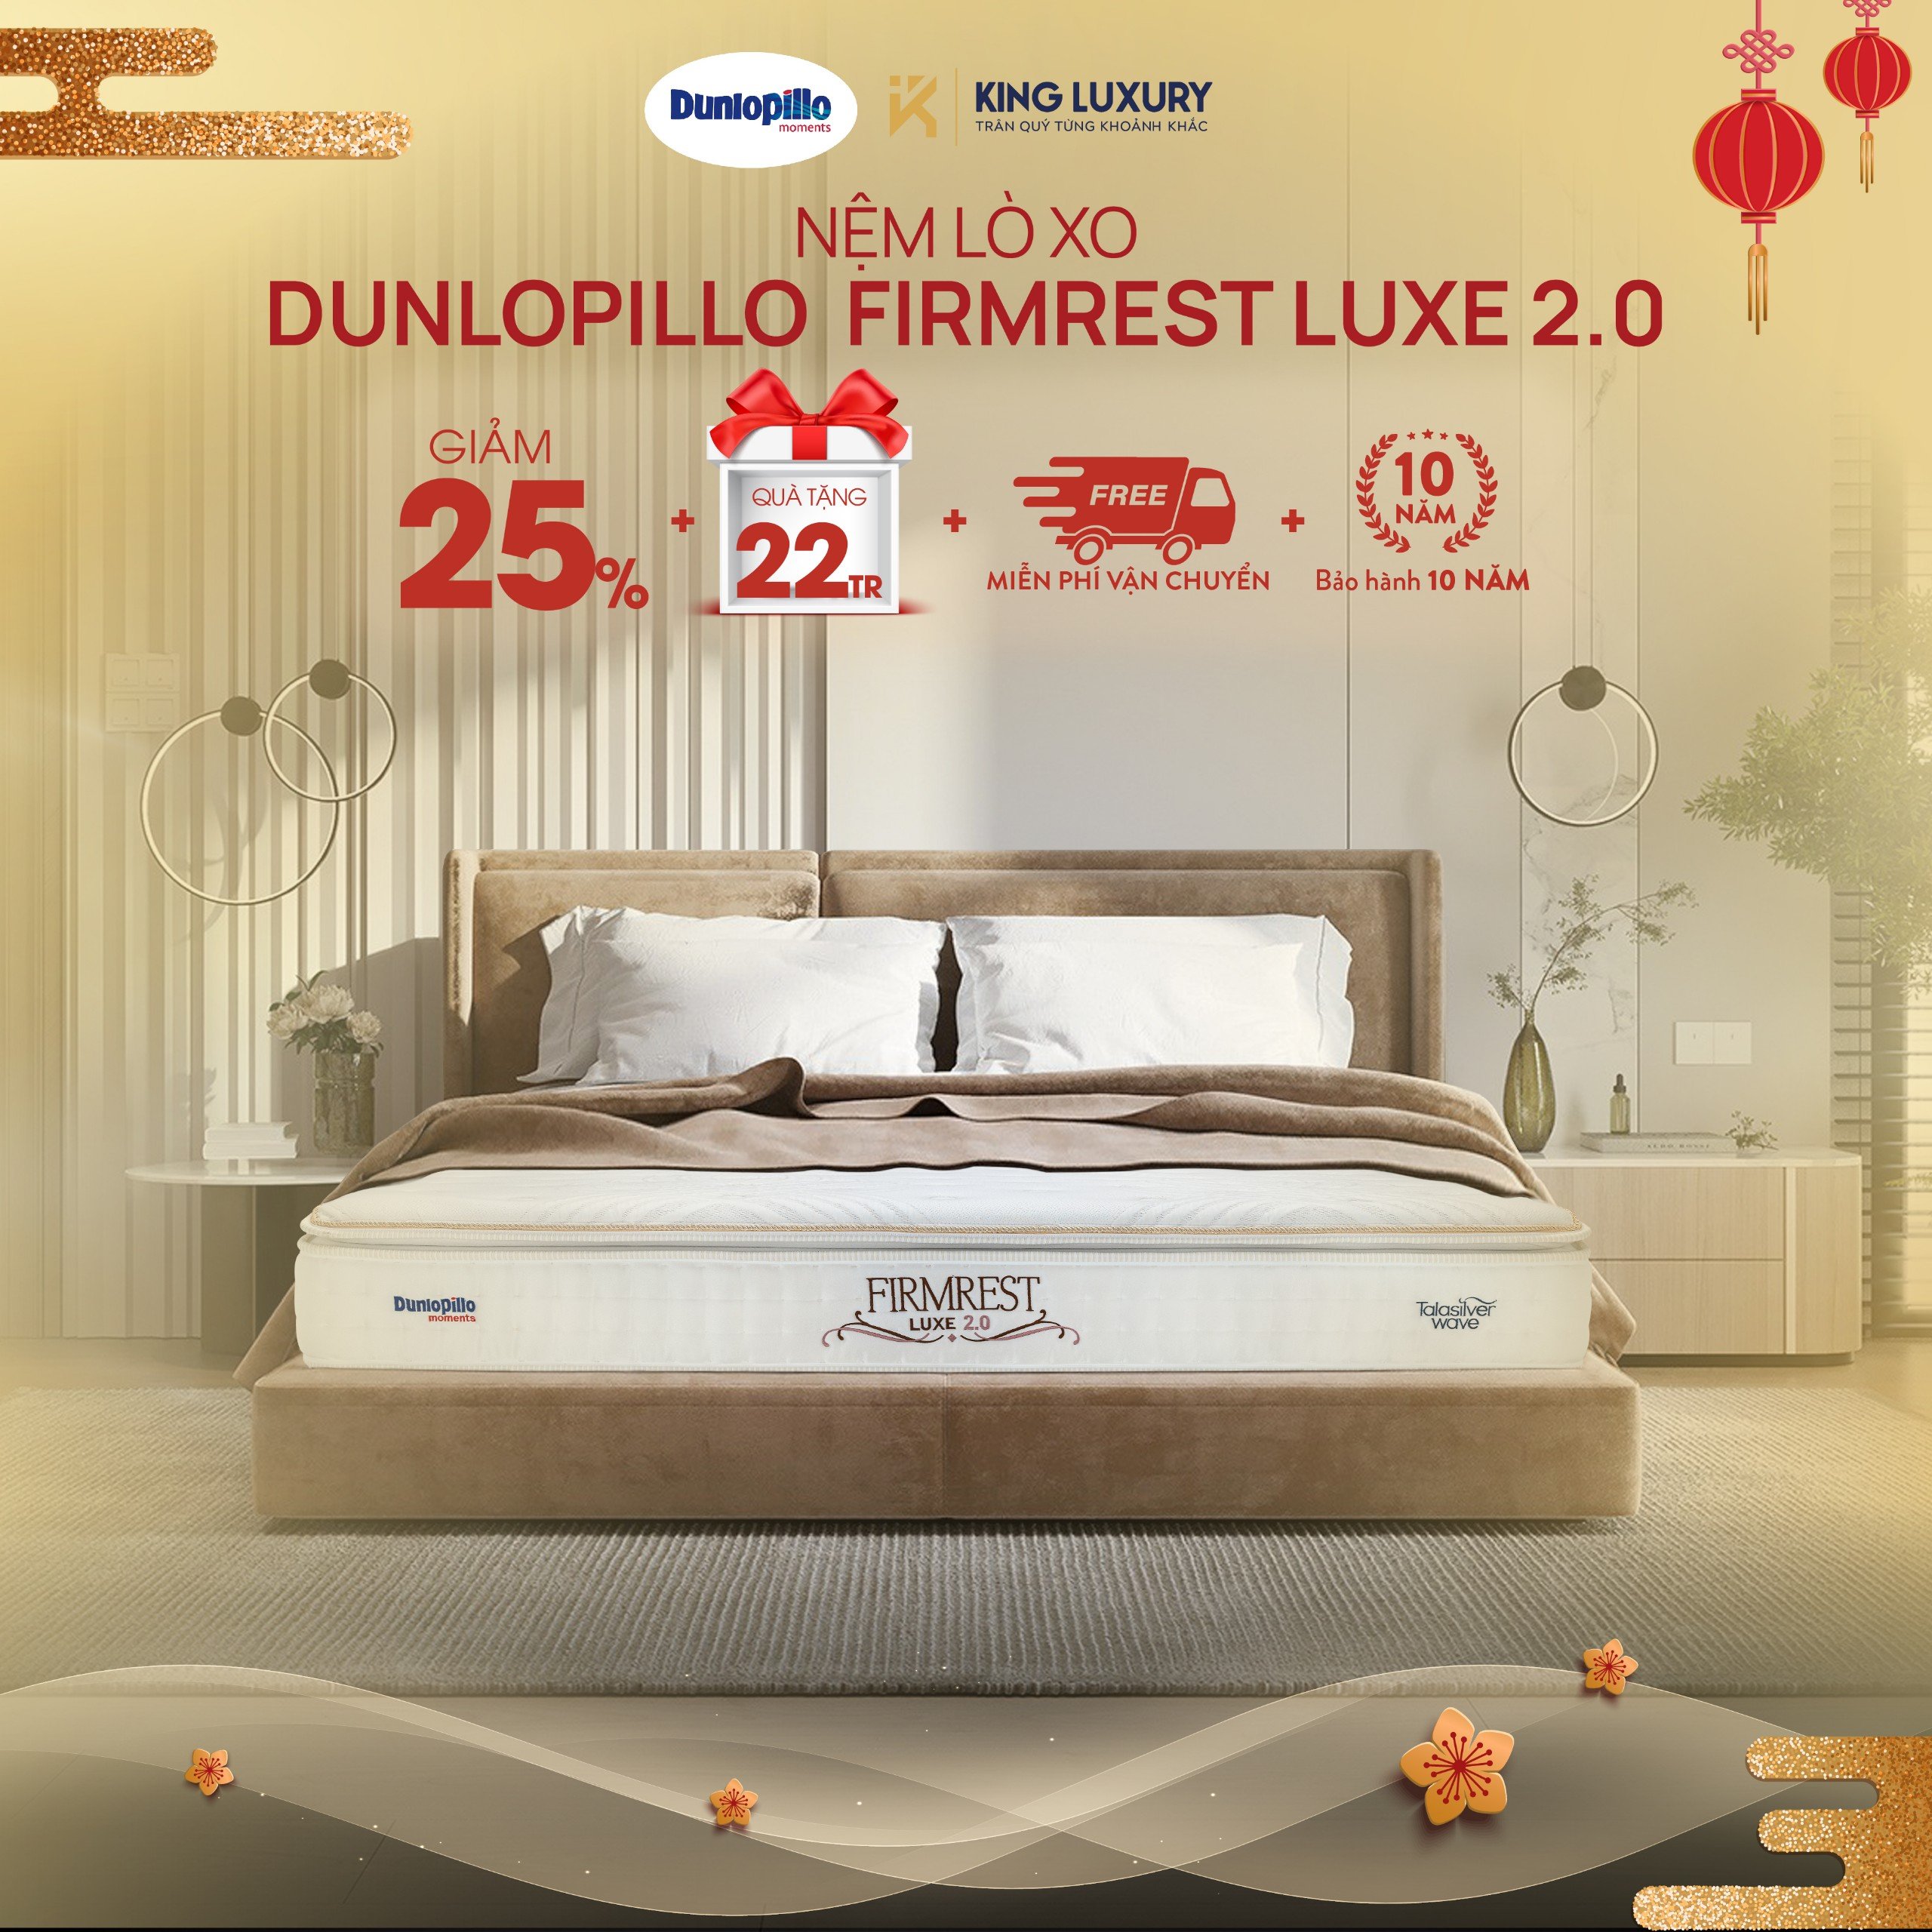 Nệm lò xo Dunlopillo Firmrest Luxe 2.0 
Giảm 25% + Quà tặng lên tới 22 triệu